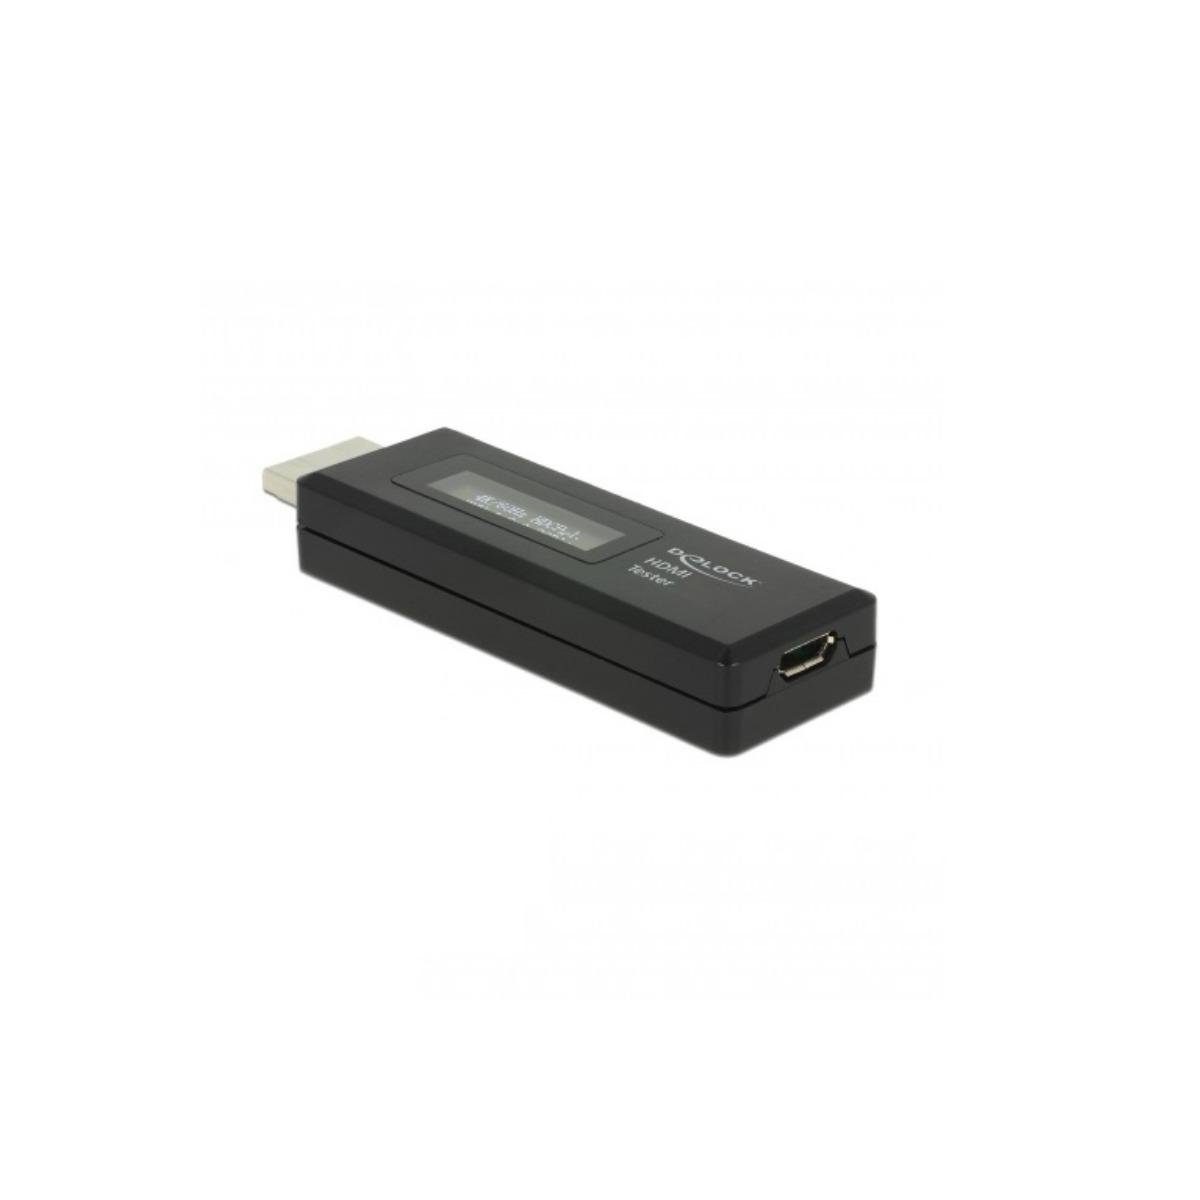 mit HDMI-A, Delock - HDMI-Tester OLED-Anzeige Für 63327 Computer-Kabel, HDMI - EDID-Information